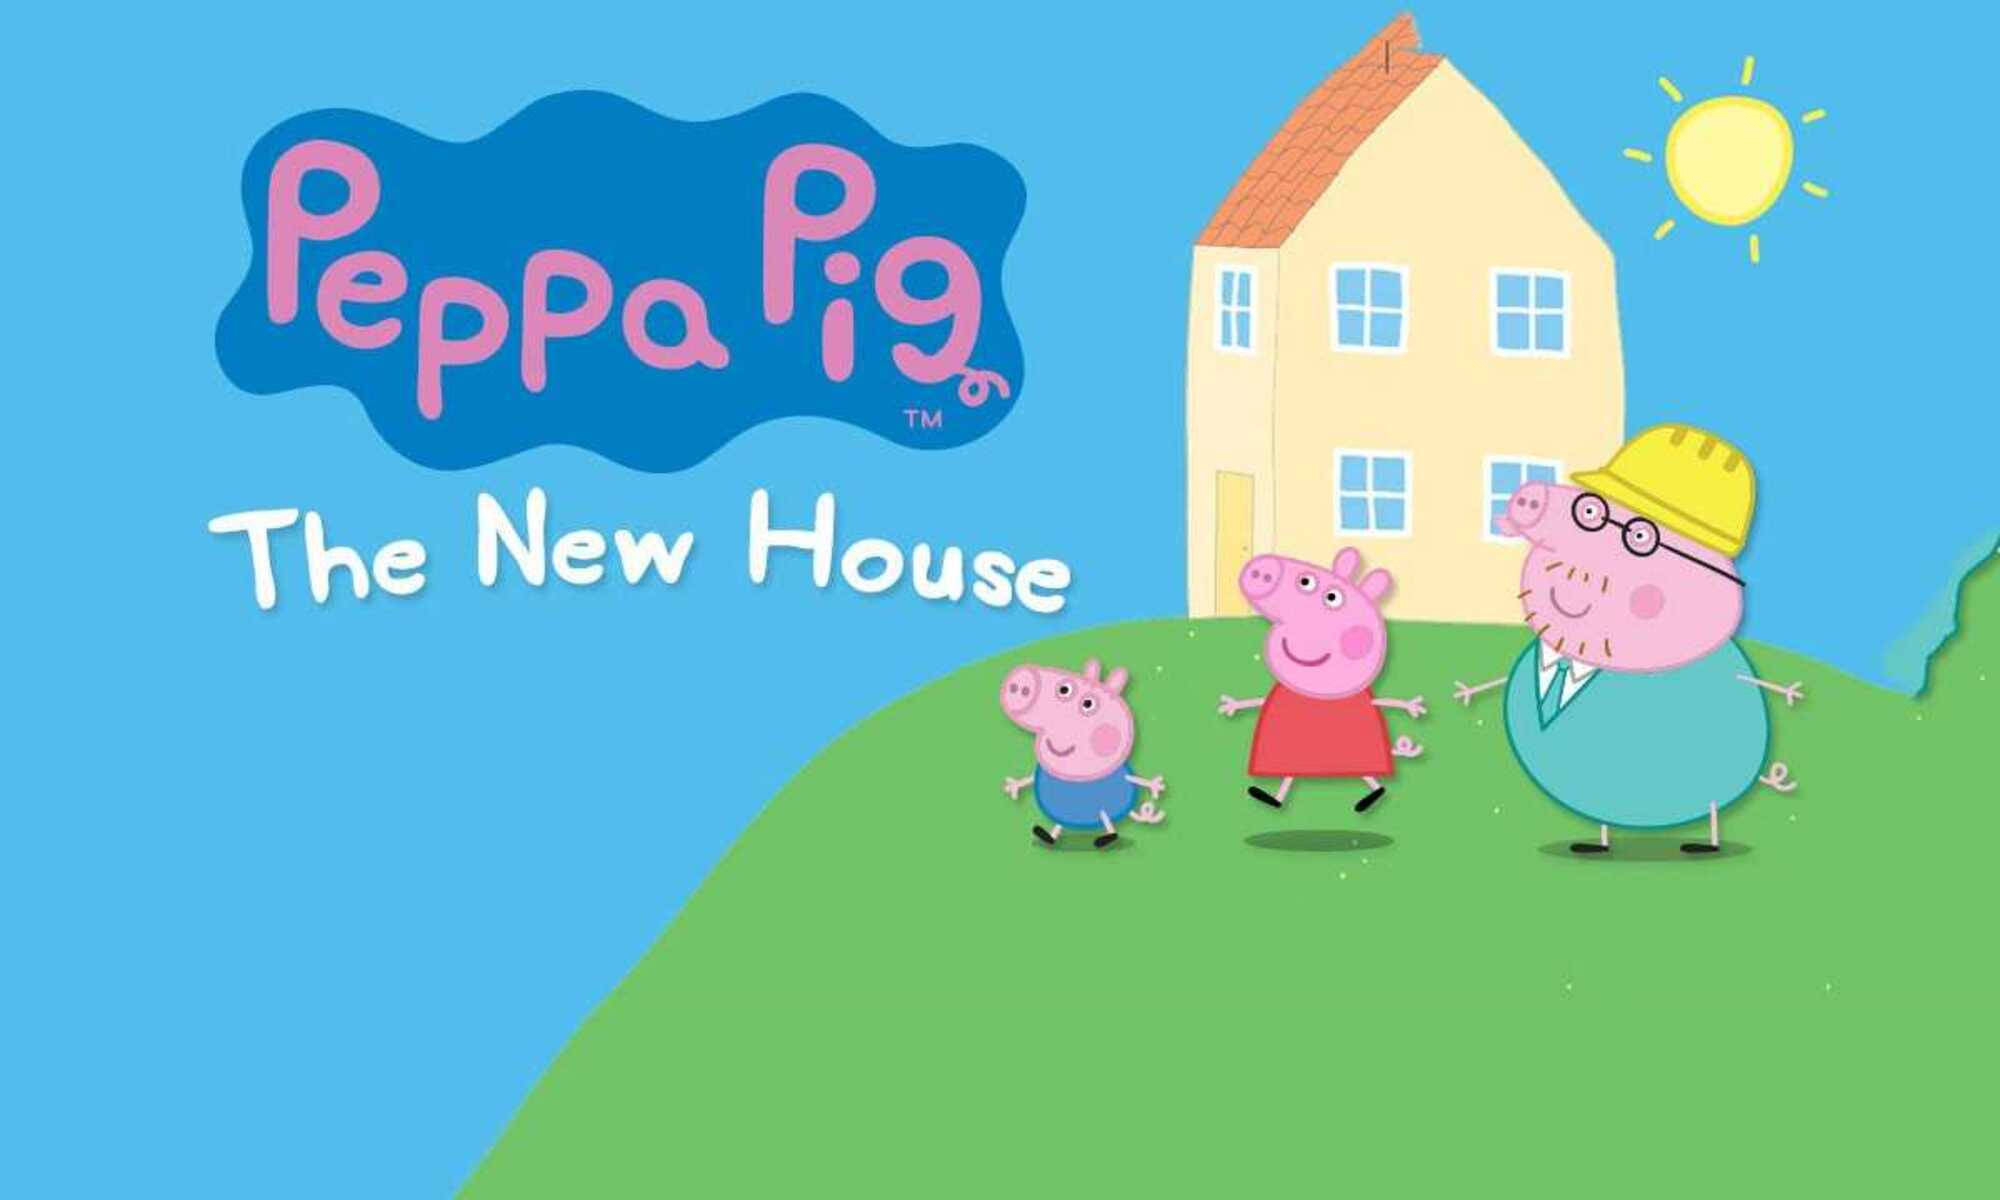 Casa da peppa pig wallpaper - Photo #3323 - PNG Wala - Photo And PNG 100%  Free Stock Images